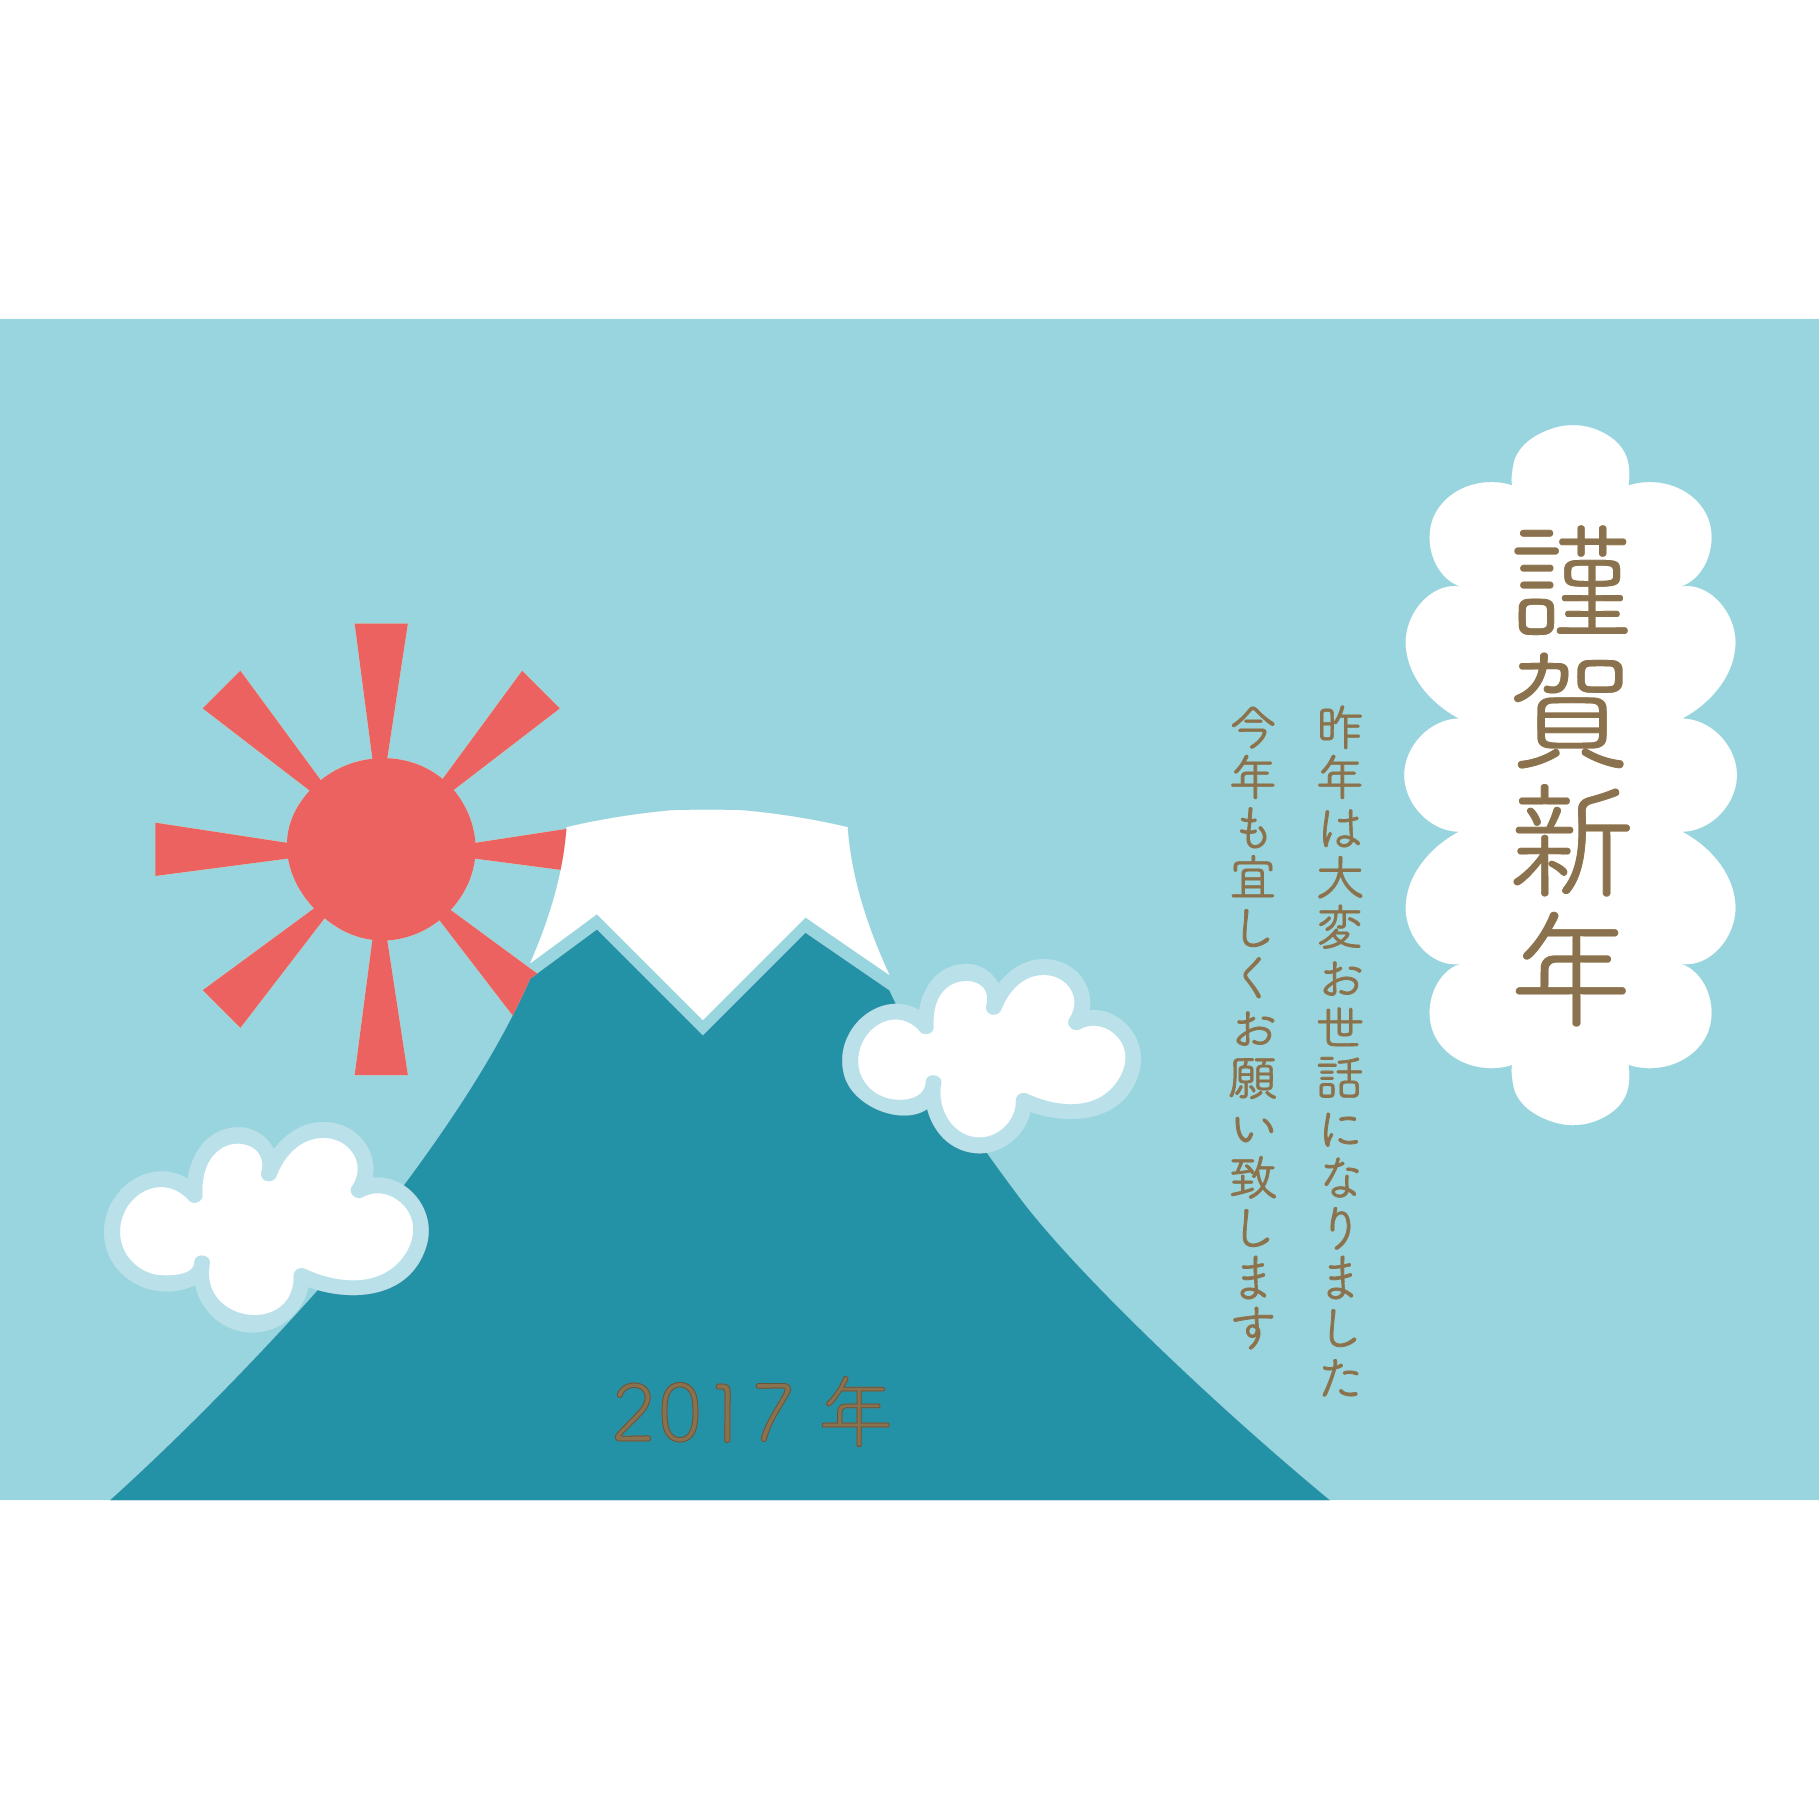 17年 年賀状 お天気富士山あっぱれ 初日の出のイラスト 横バージョン 商用フリー 無料 のイラスト素材なら イラストマンション